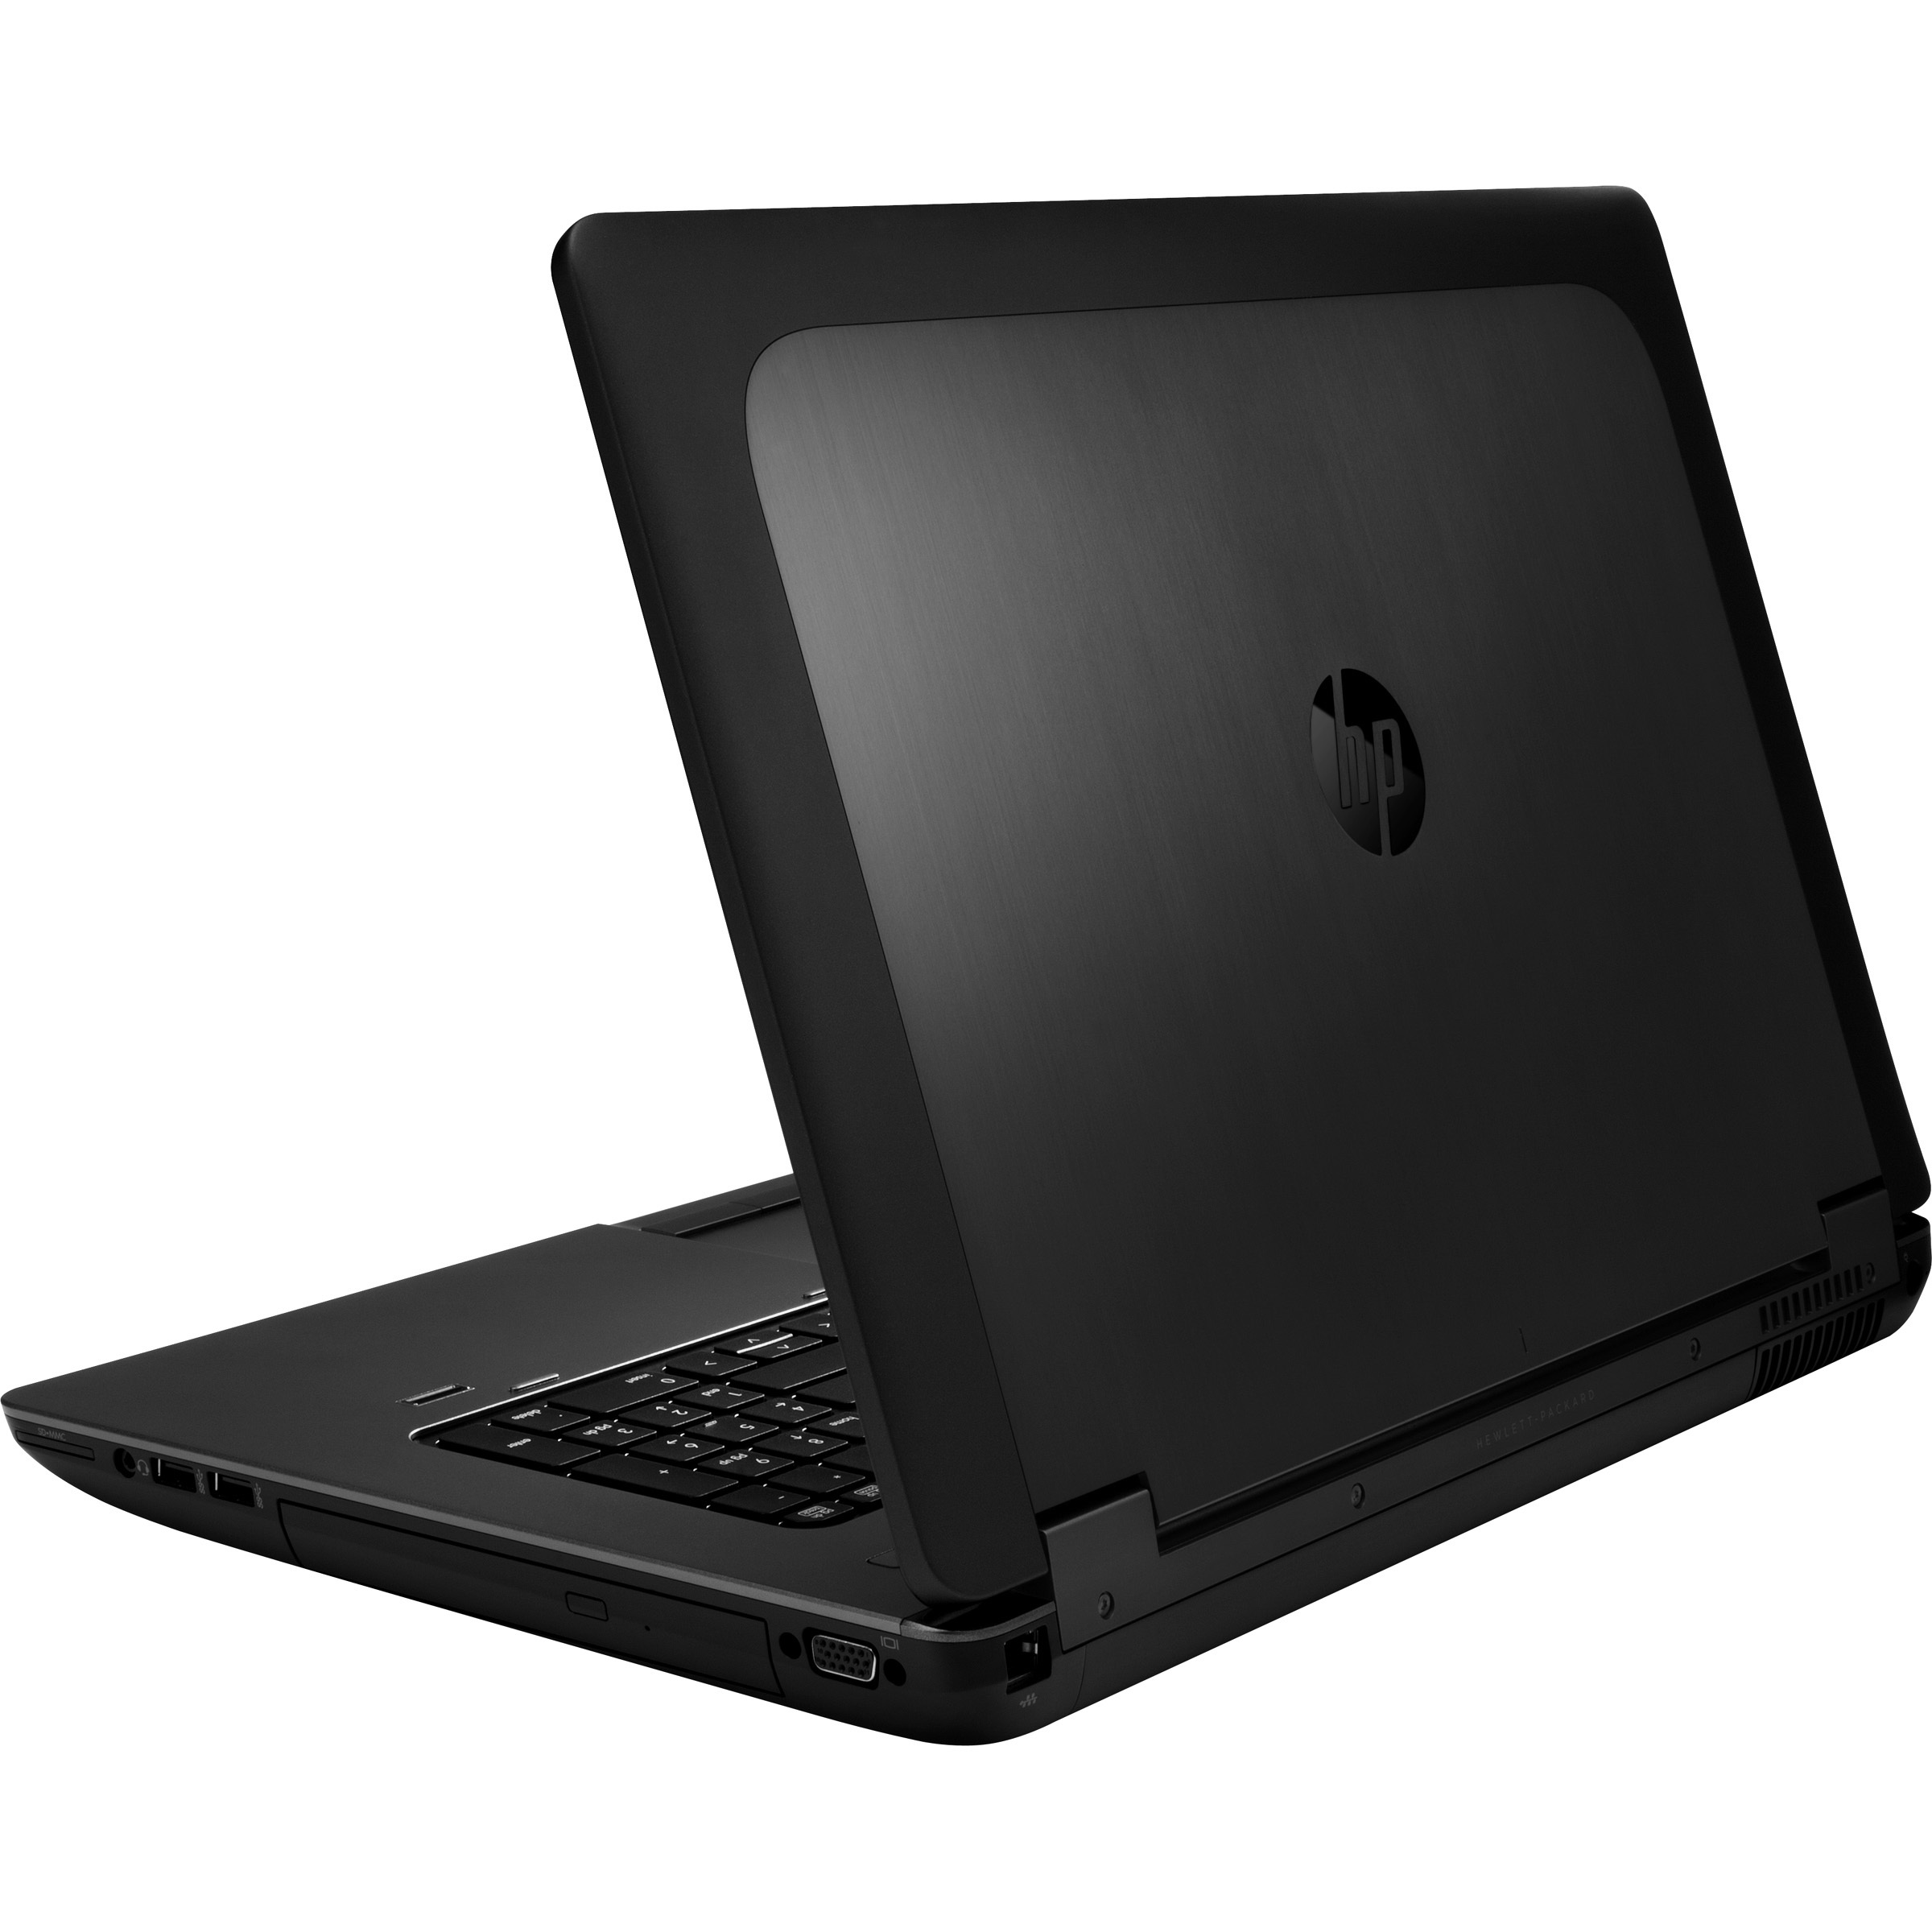 Laptop Hp I7 - duta Teknologi